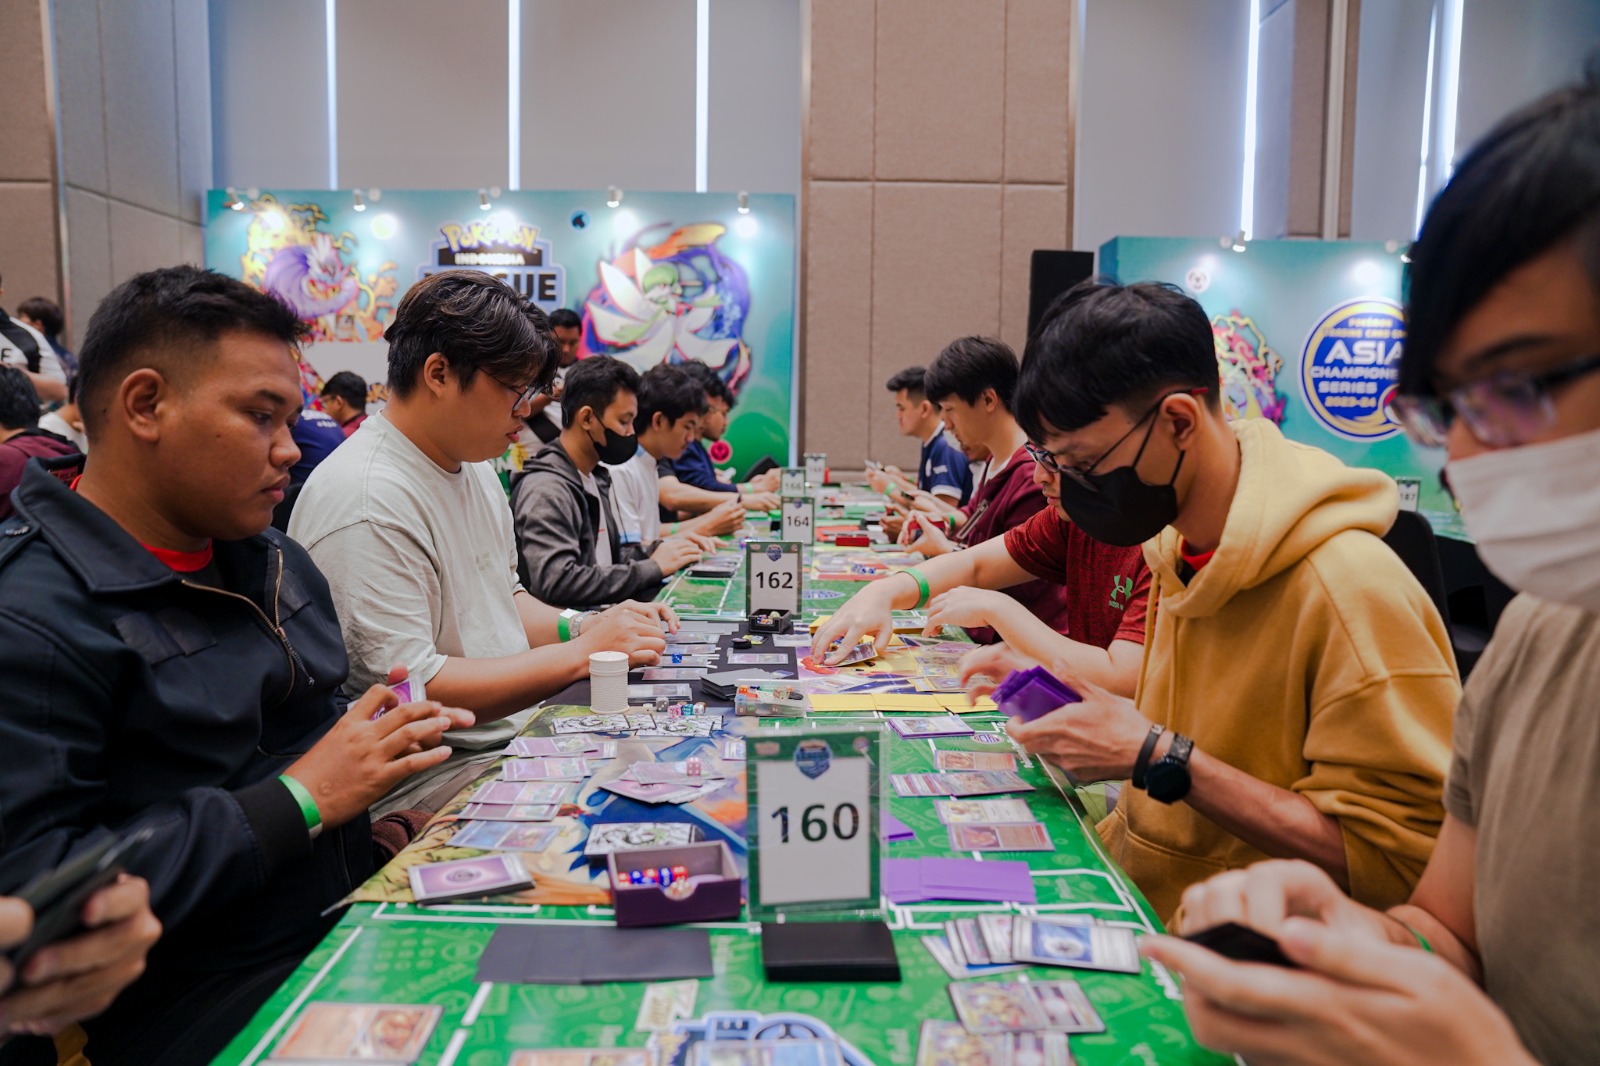 Kompetisi Regional League jadi Ajang Pertemuan Pemain kartu Pokémon Professional se-Indonesia